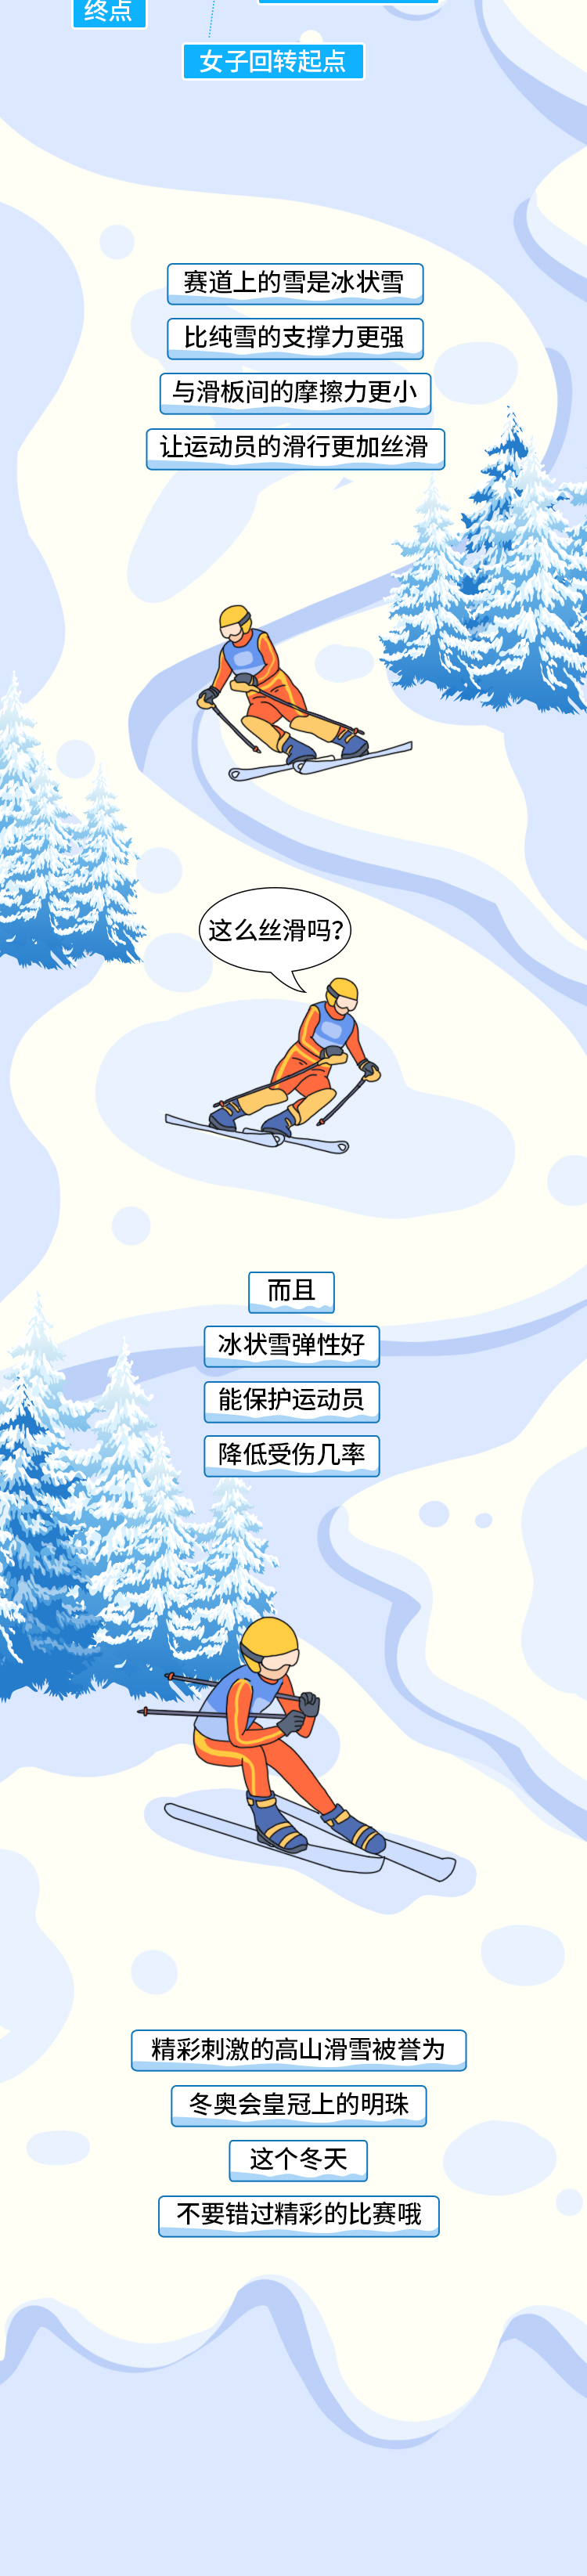 高山滑雪_05